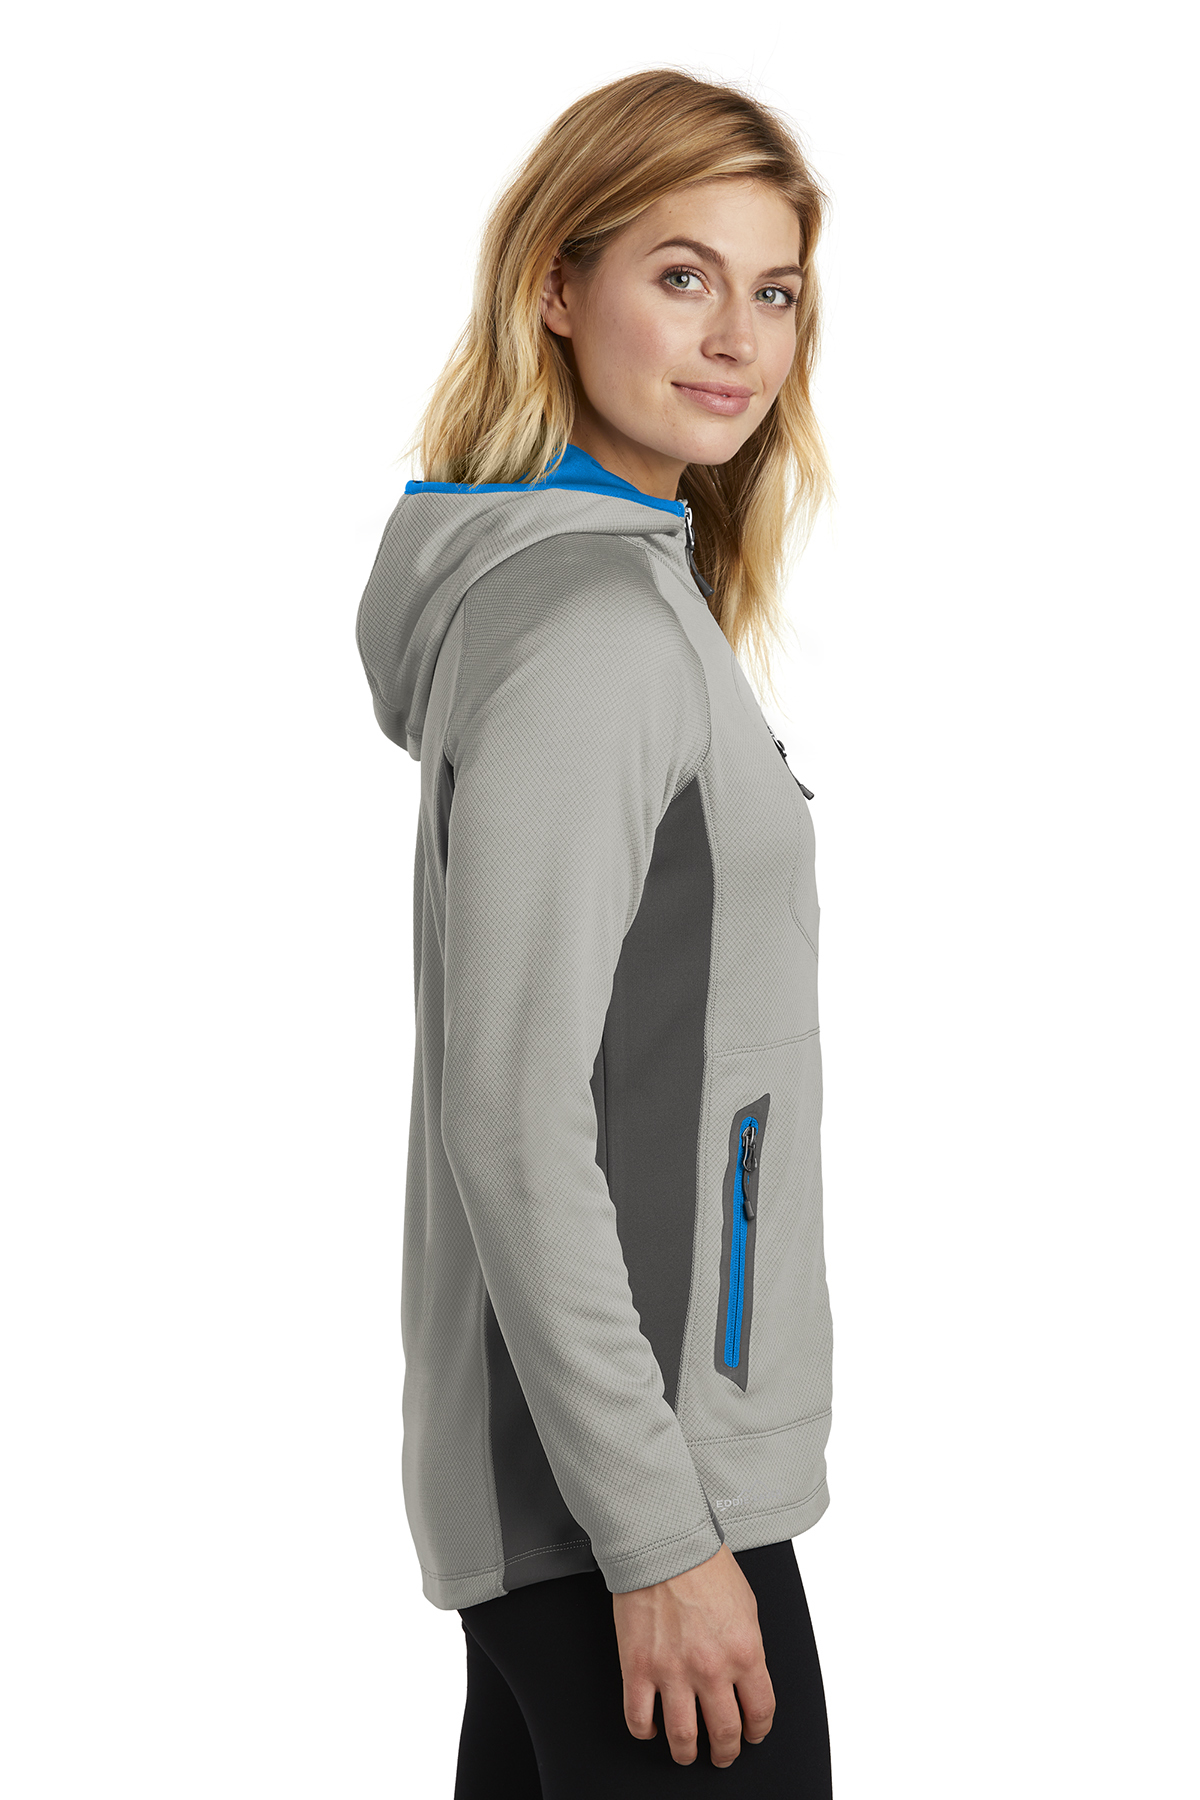 Eddie Bauer Ladies Sport Hooded Full-Zip Fleece Jacket, Product